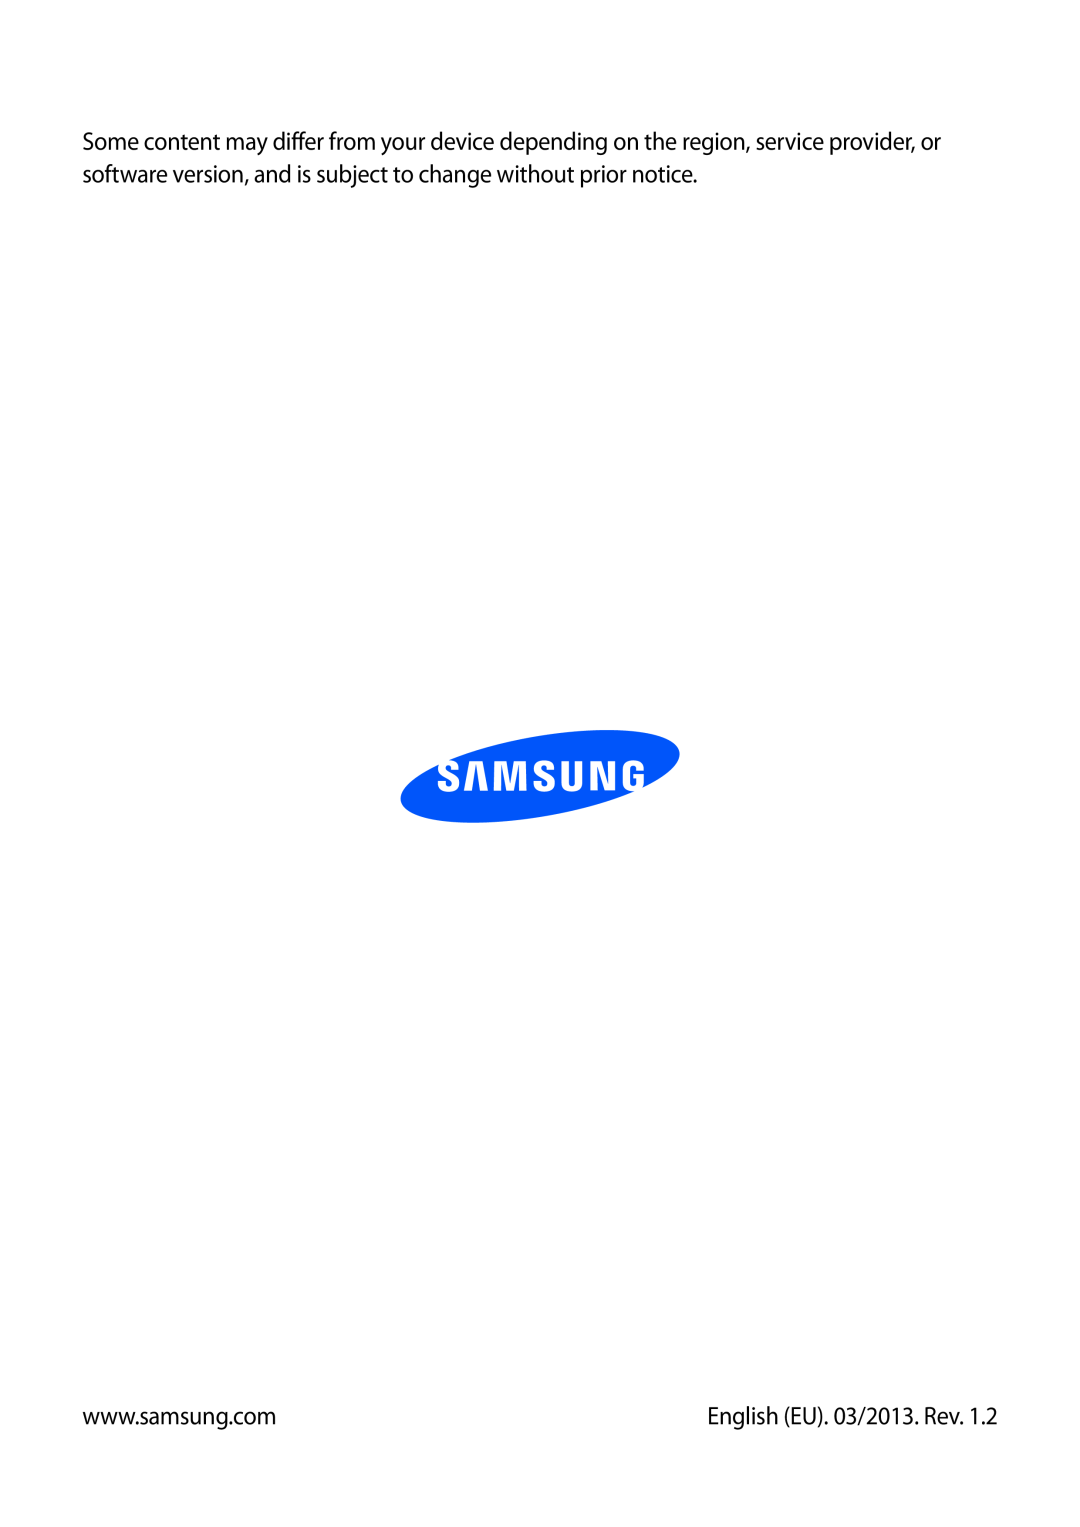 Samsung GT-I8730TAAAMN, GT-I8730TAAVGR, GT-I8730ZWAVD2, GT-I8730ZWAMEO, GT-I8730ZWAITV manual English EU. 03/2013. Rev 